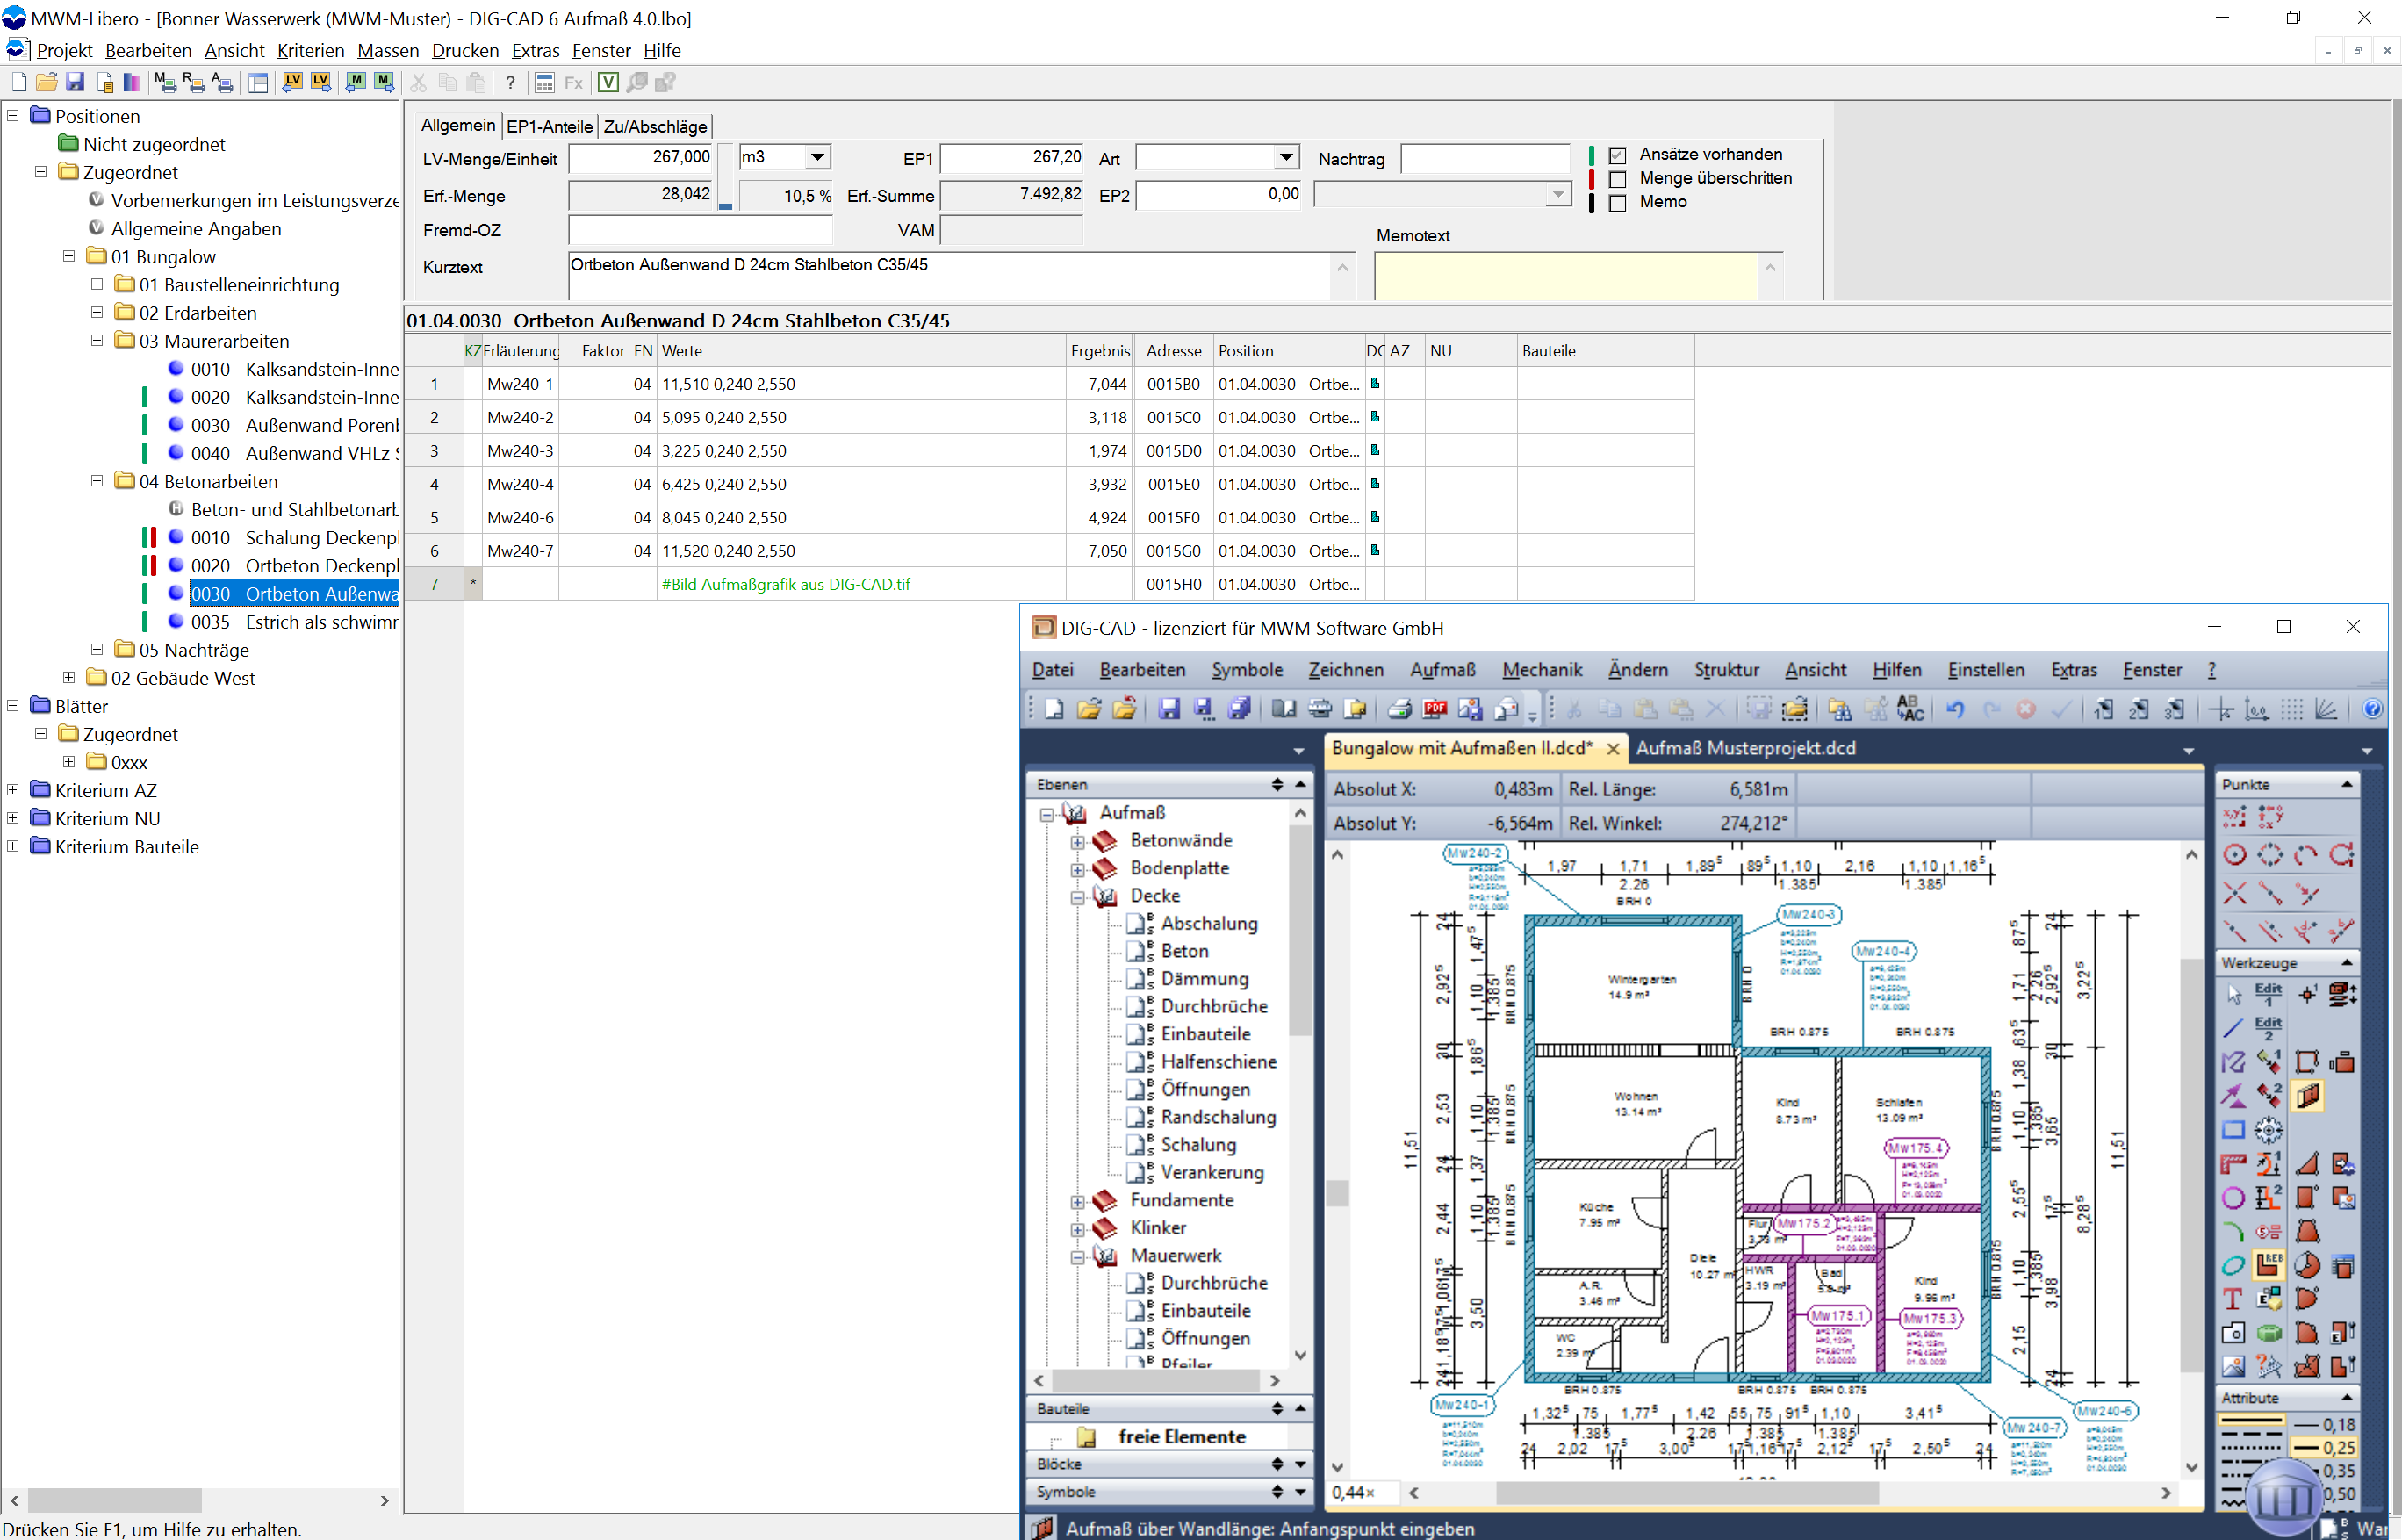 MWM-Libero und DIG-CAD Aufmaß für die grafische Mengenermittlung aus Plänen